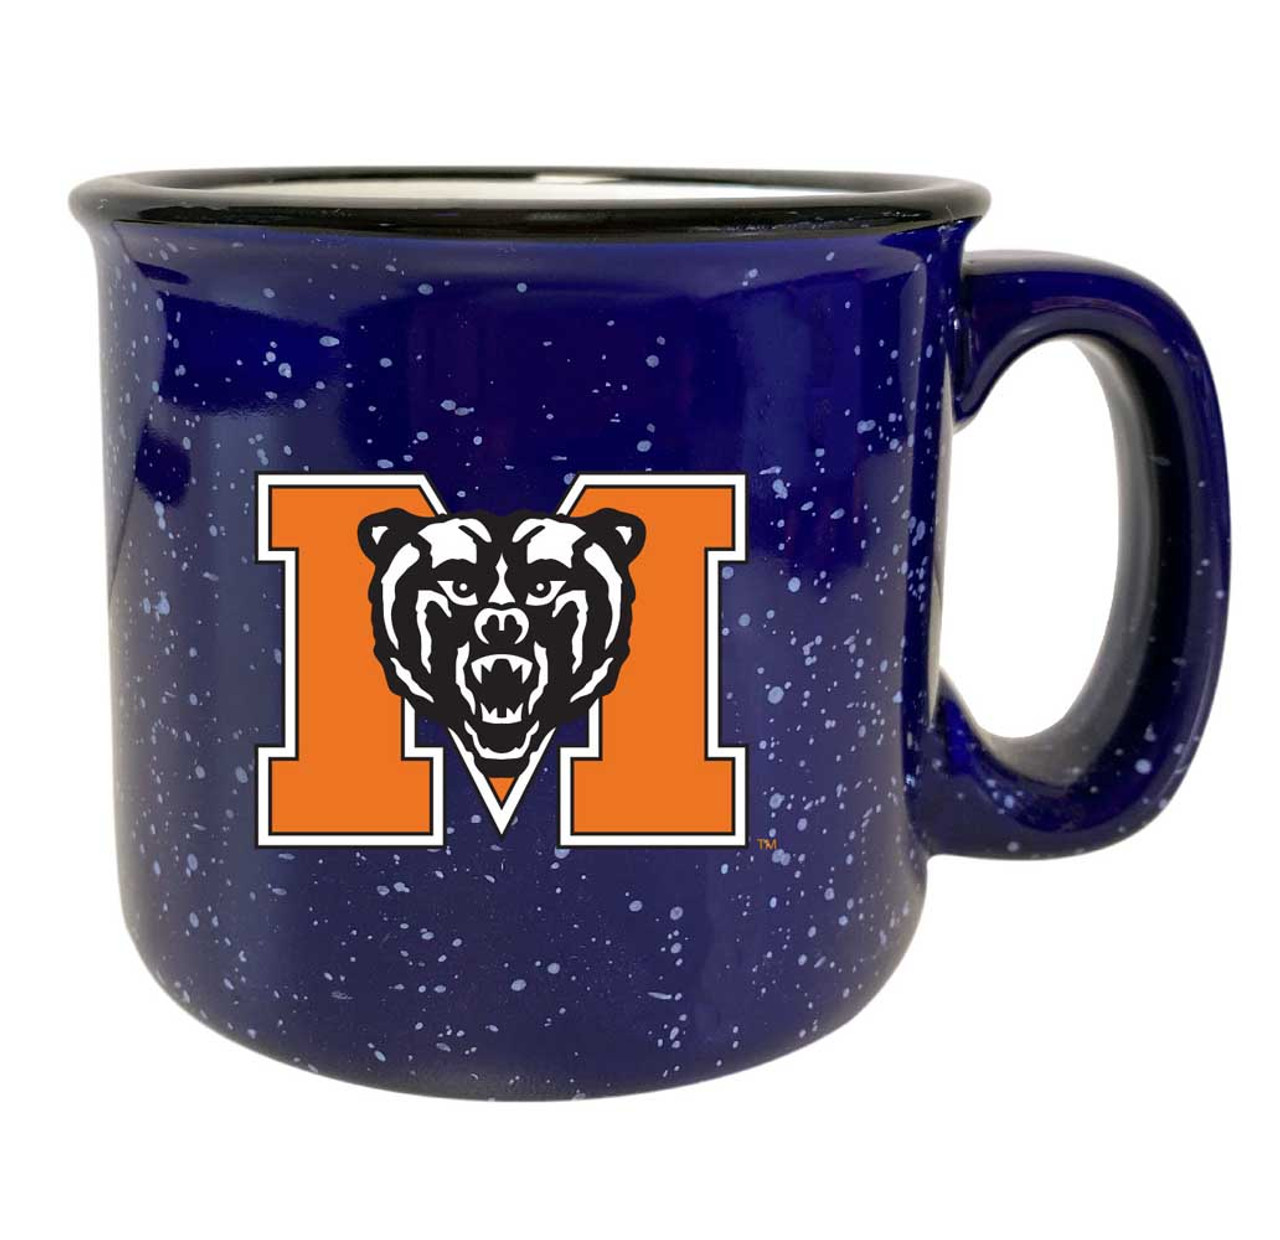 Mercer University Speckled Ceramic Camper Coffee Mug (Choose Your Color).